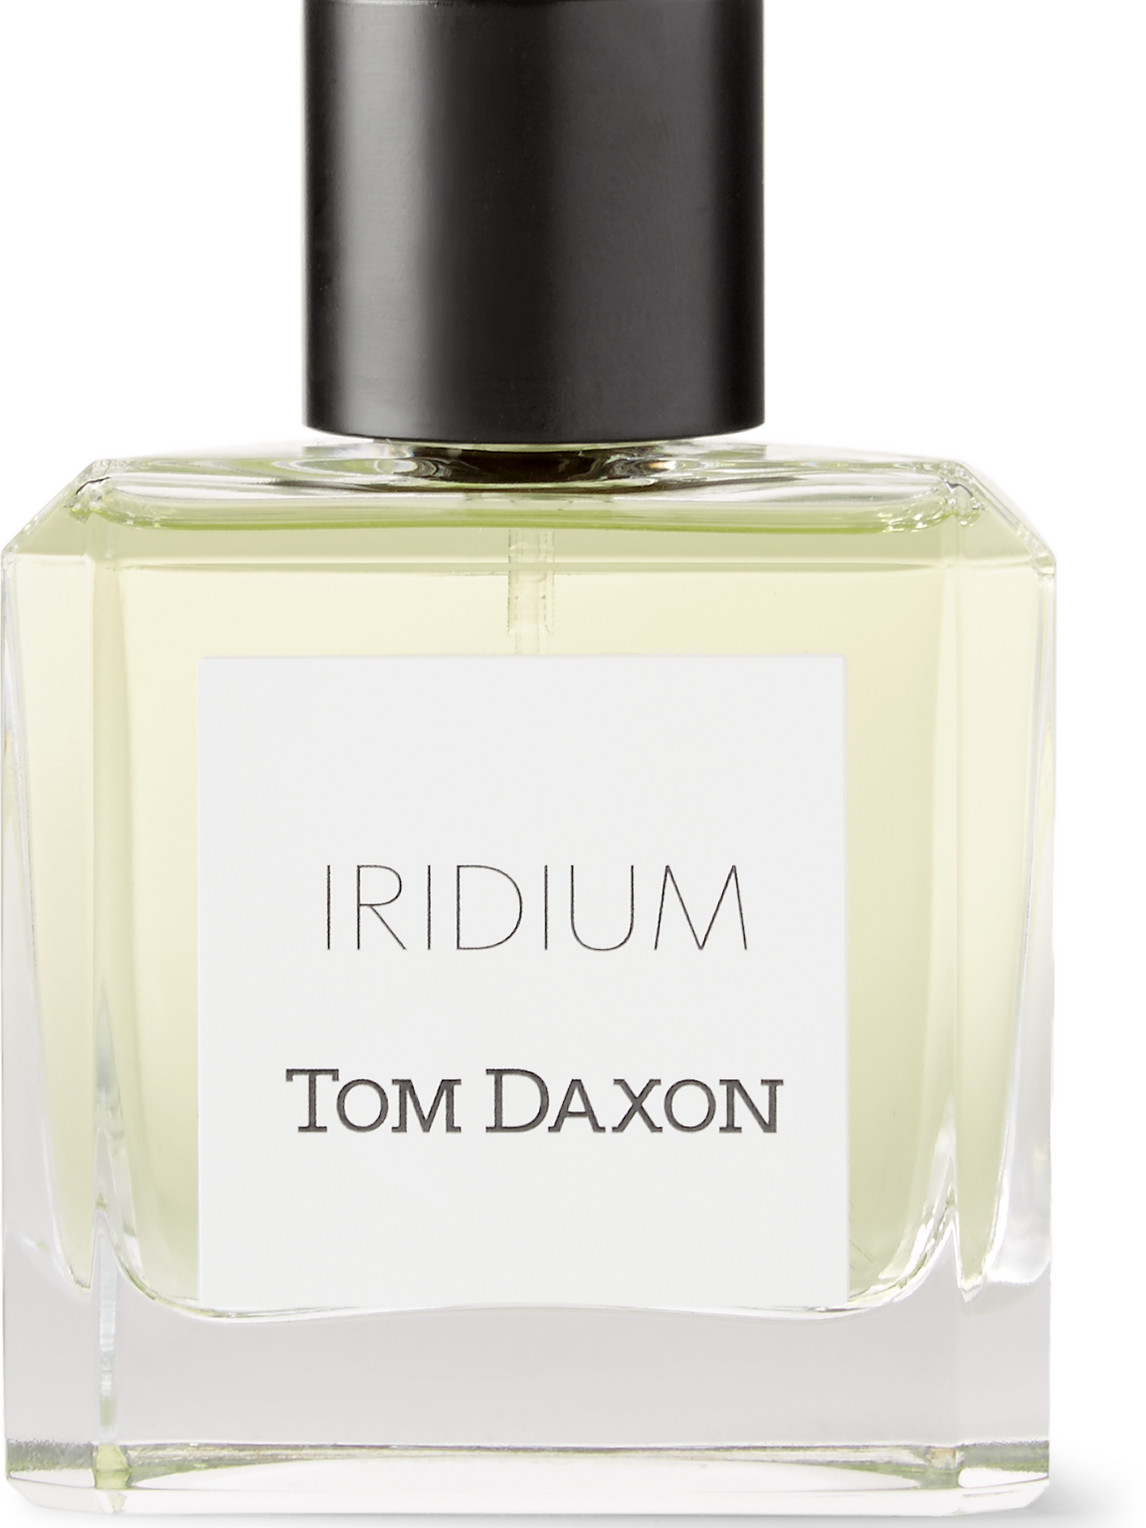 Tom Daxon Iridium Eau De Parfum In Colorless